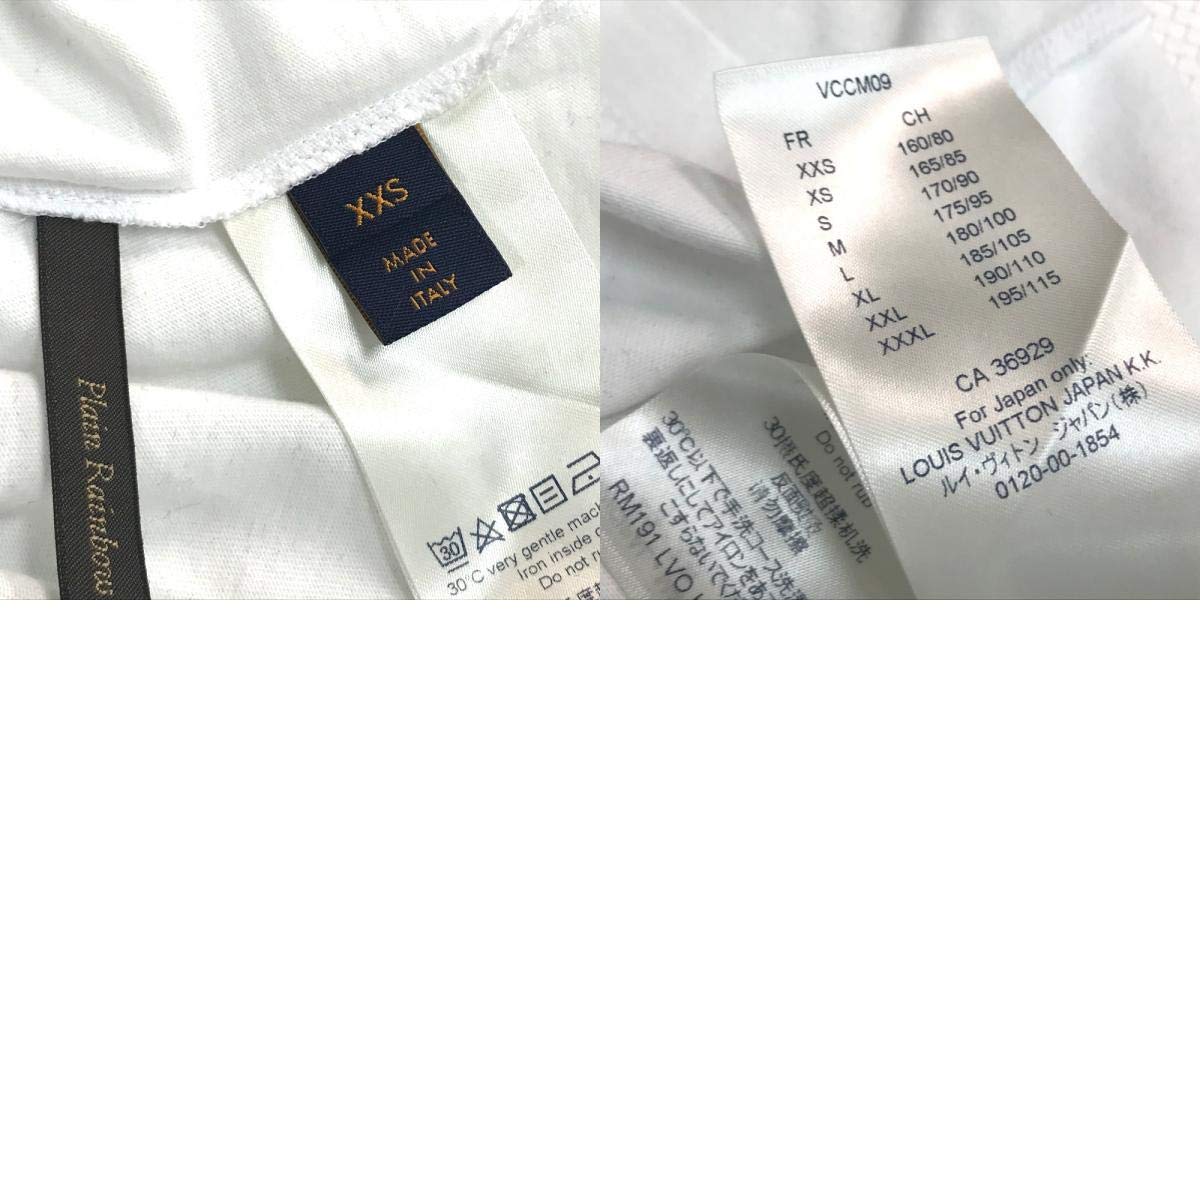 LOUIS VUITTON RM191 tops Kansas Wind Printed shirt Short sleeve T-shirt XXS